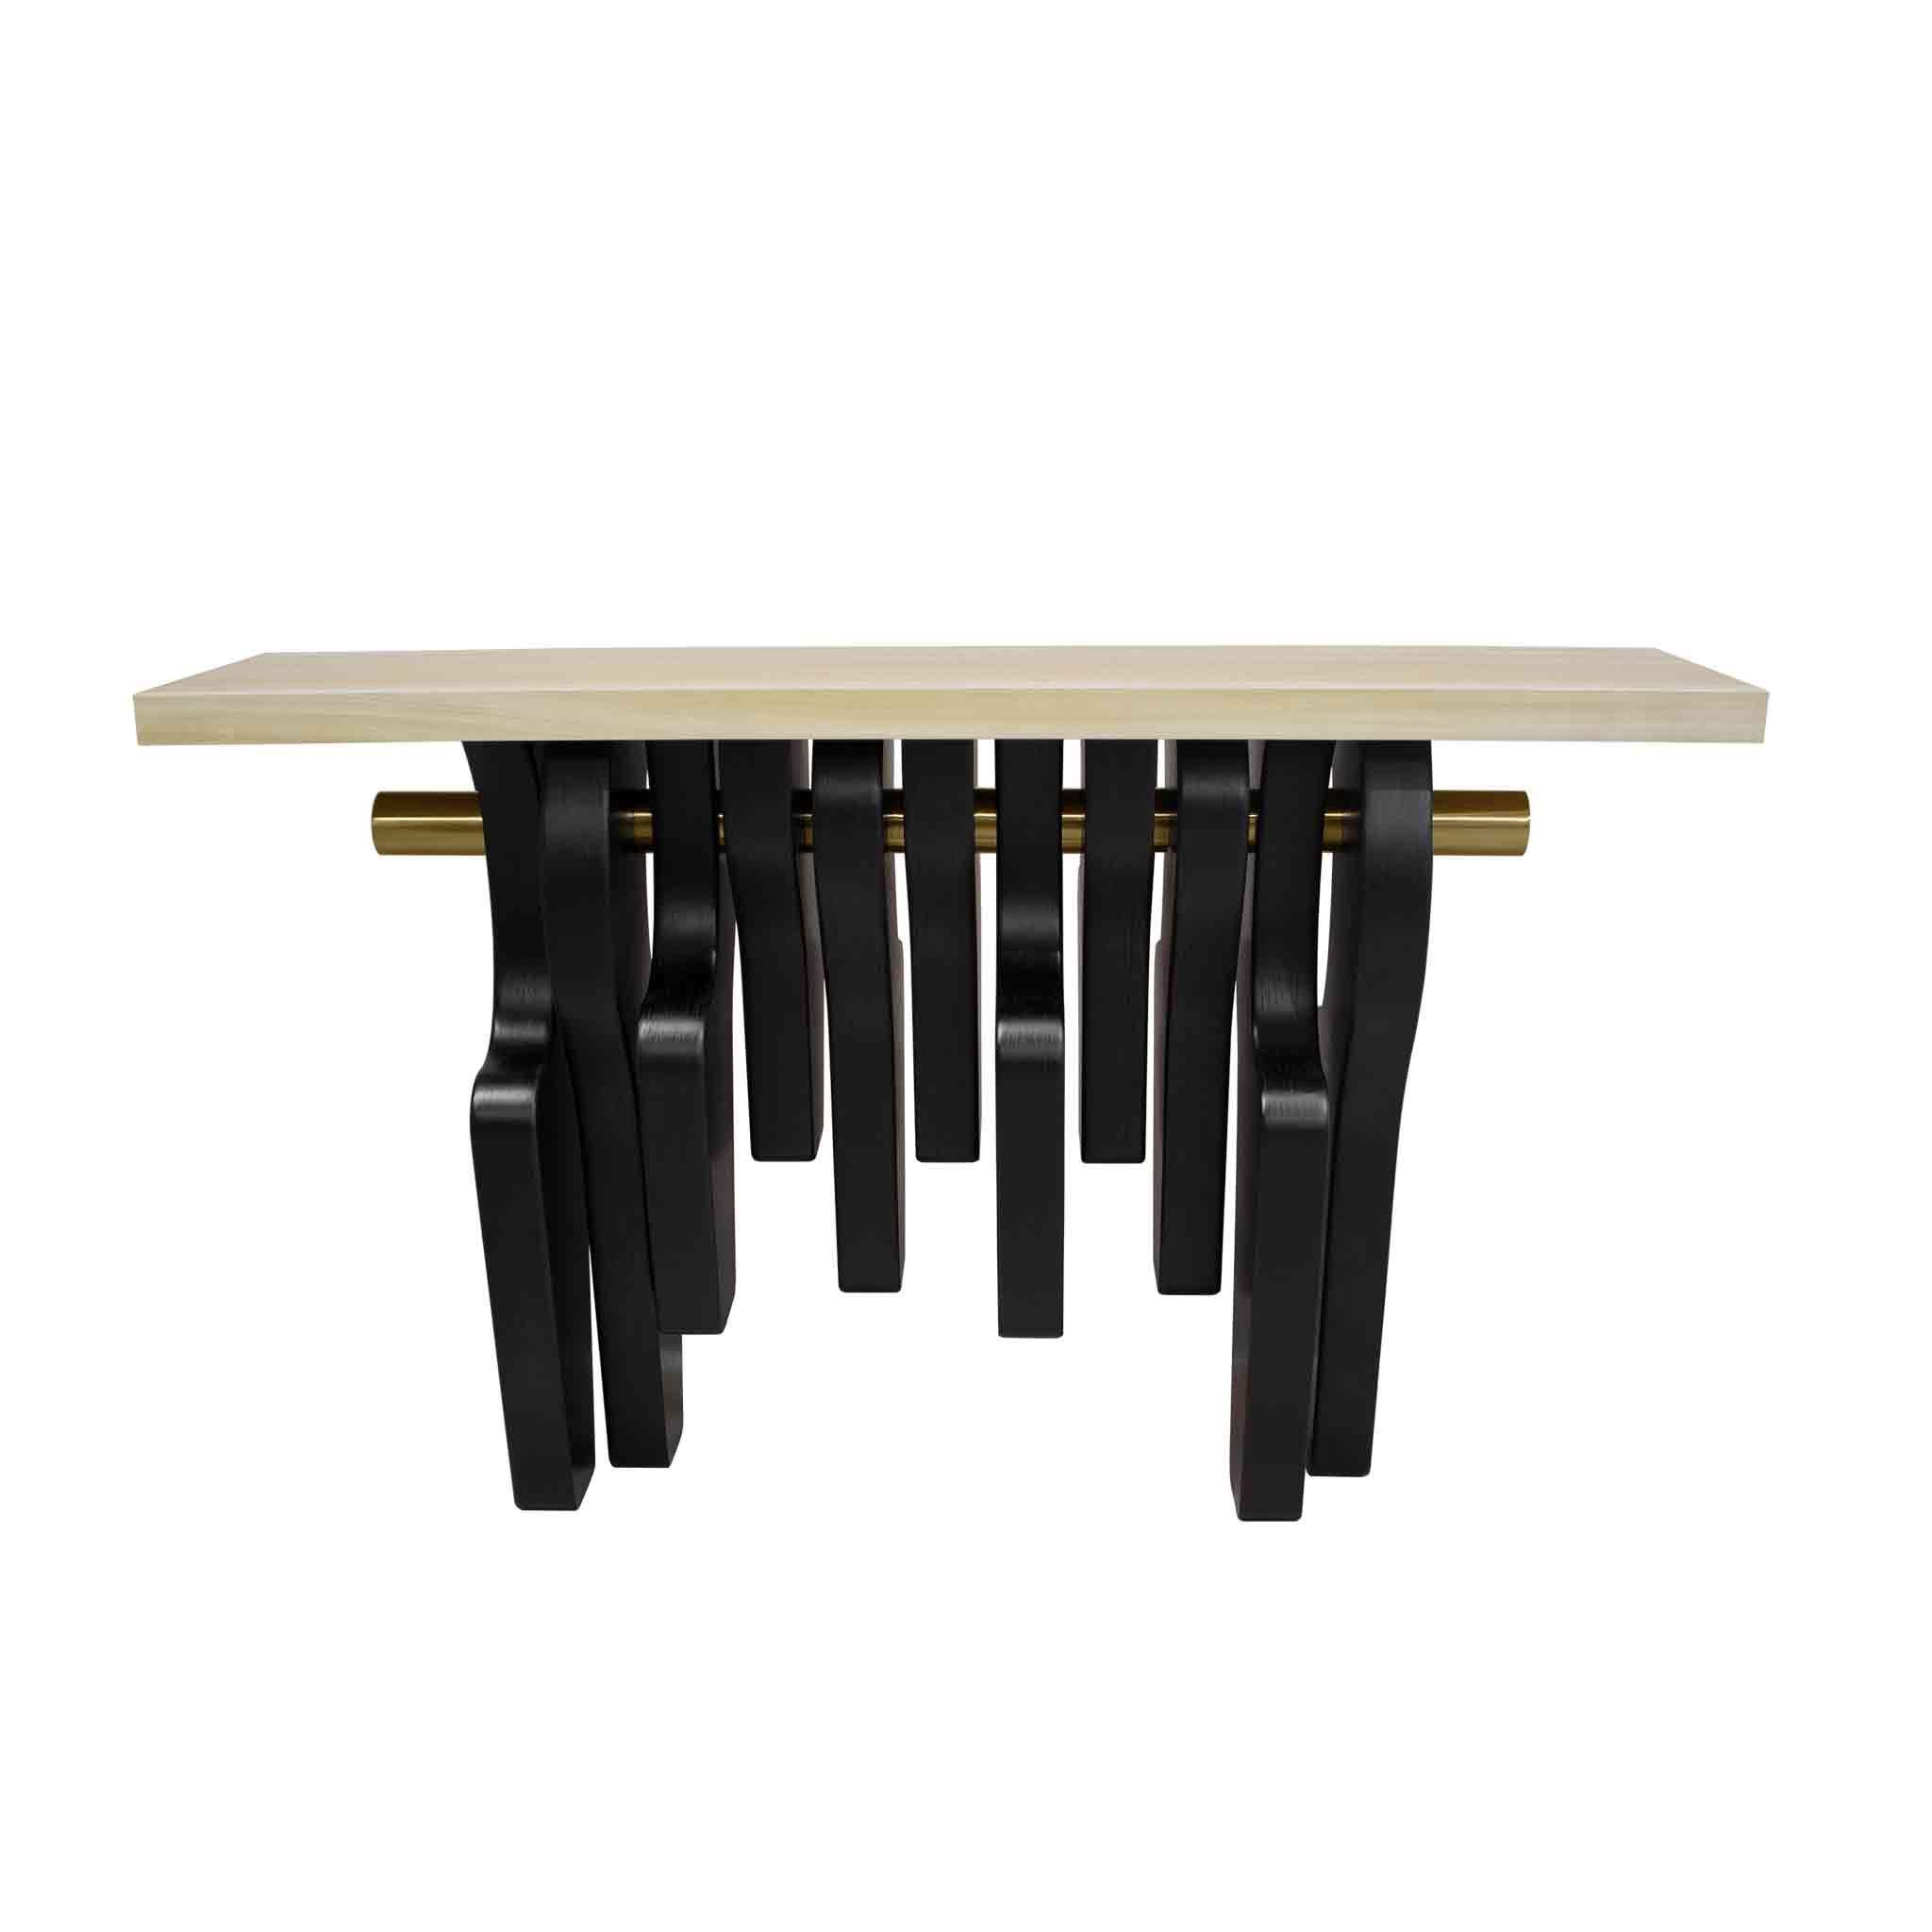 Limitierte Auflage: Cadiz Console Table ist ein Spiegelbild des modernen Designs. Ein handgefertigter Konsolentisch aus Holz ist das perfekte Möbelstück für ein modernes Wohnzimmer oder eine luxuriöse Eingangseinrichtung.

MATERIALIEN: Platte aus